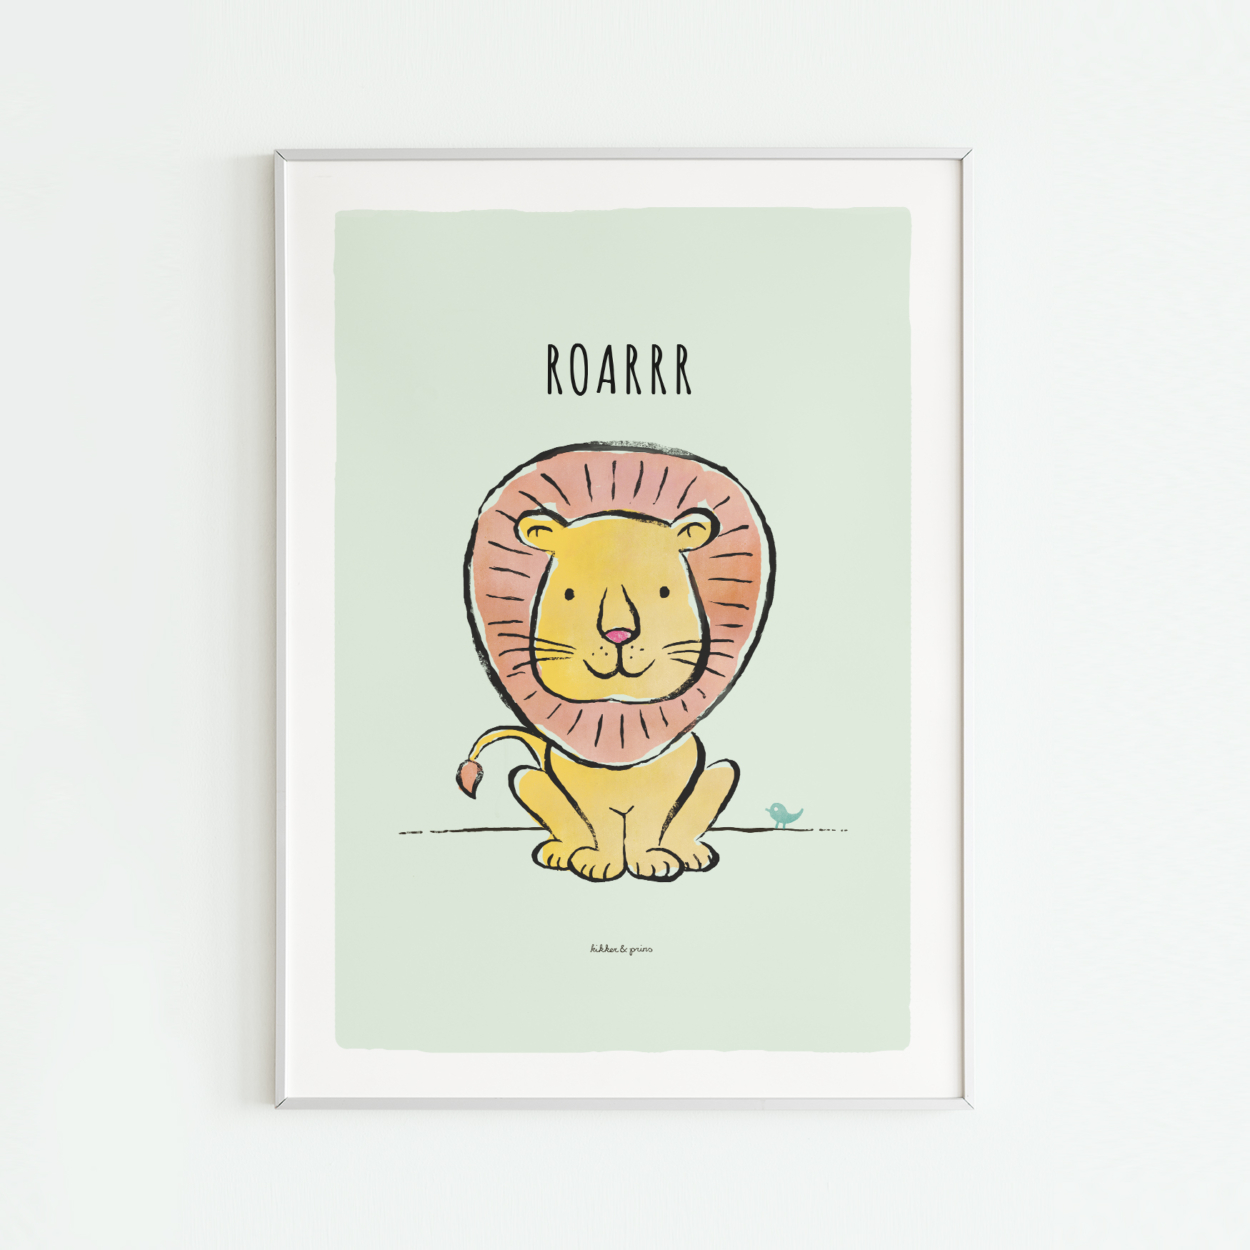 Kinderkamer poster met illustratie van een leeuw